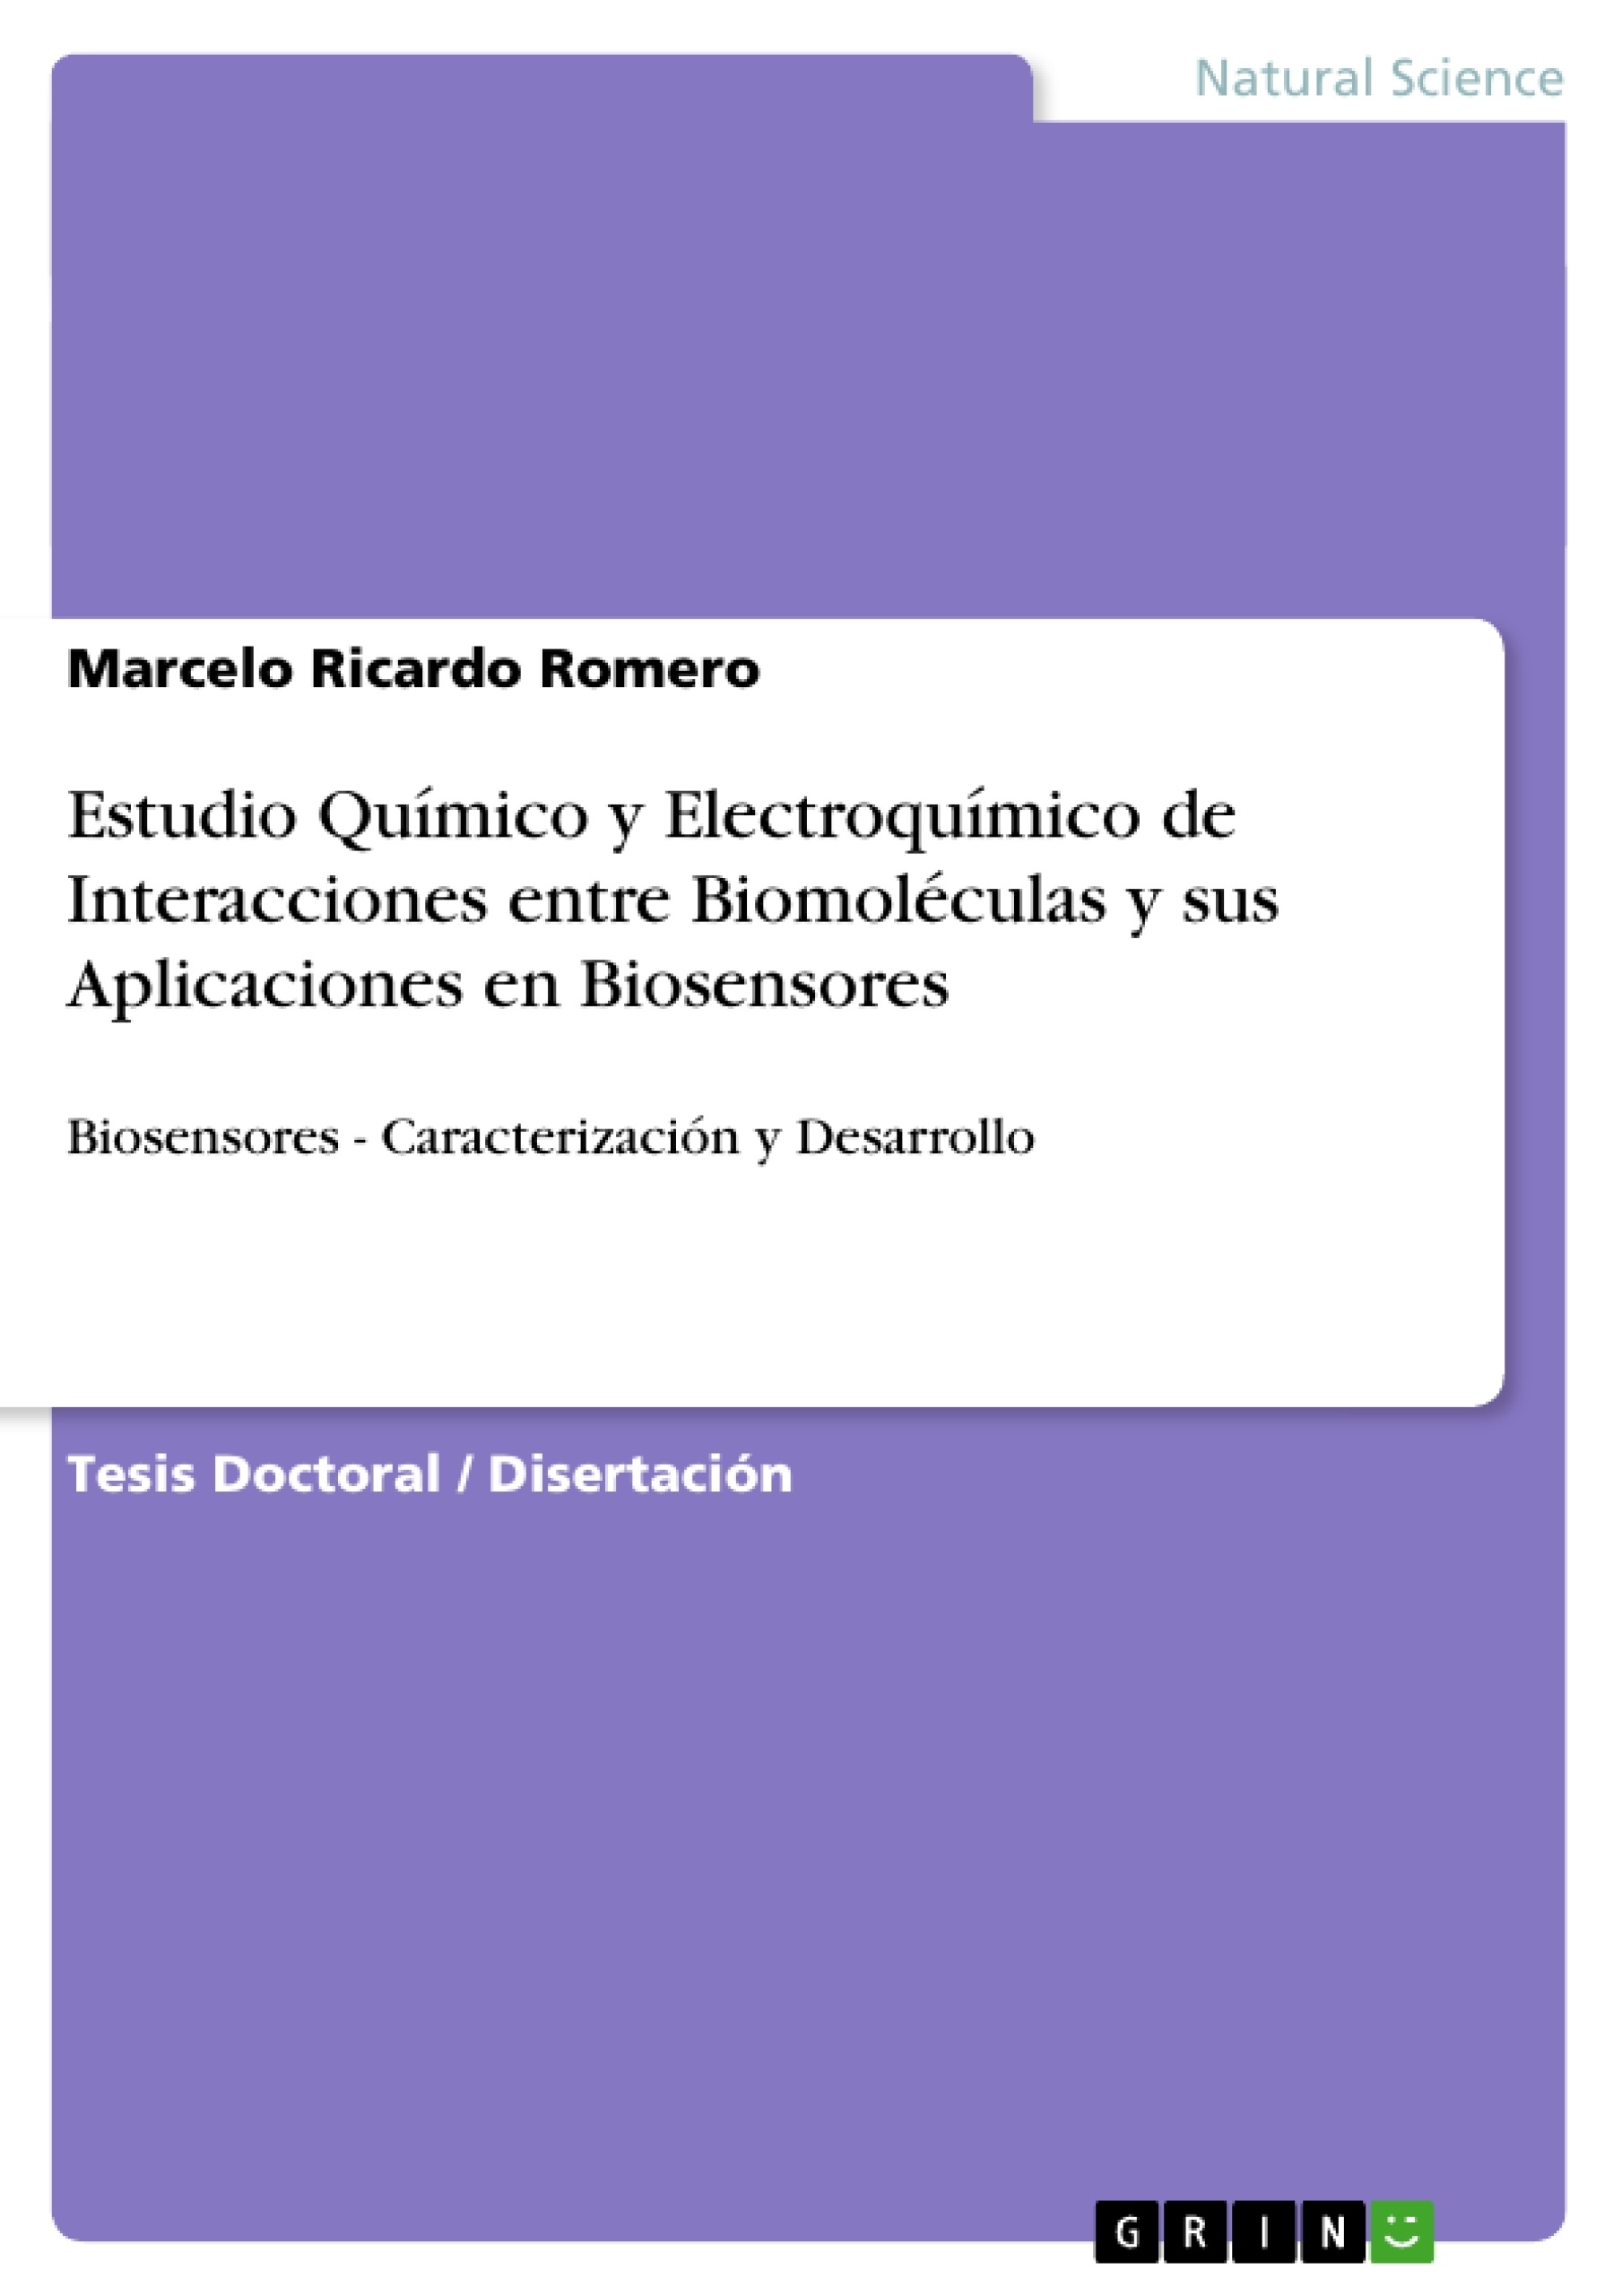 Titel: Estudio Químico y Electroquímico de Interacciones entre Biomoléculas y sus Aplicaciones en Biosensores